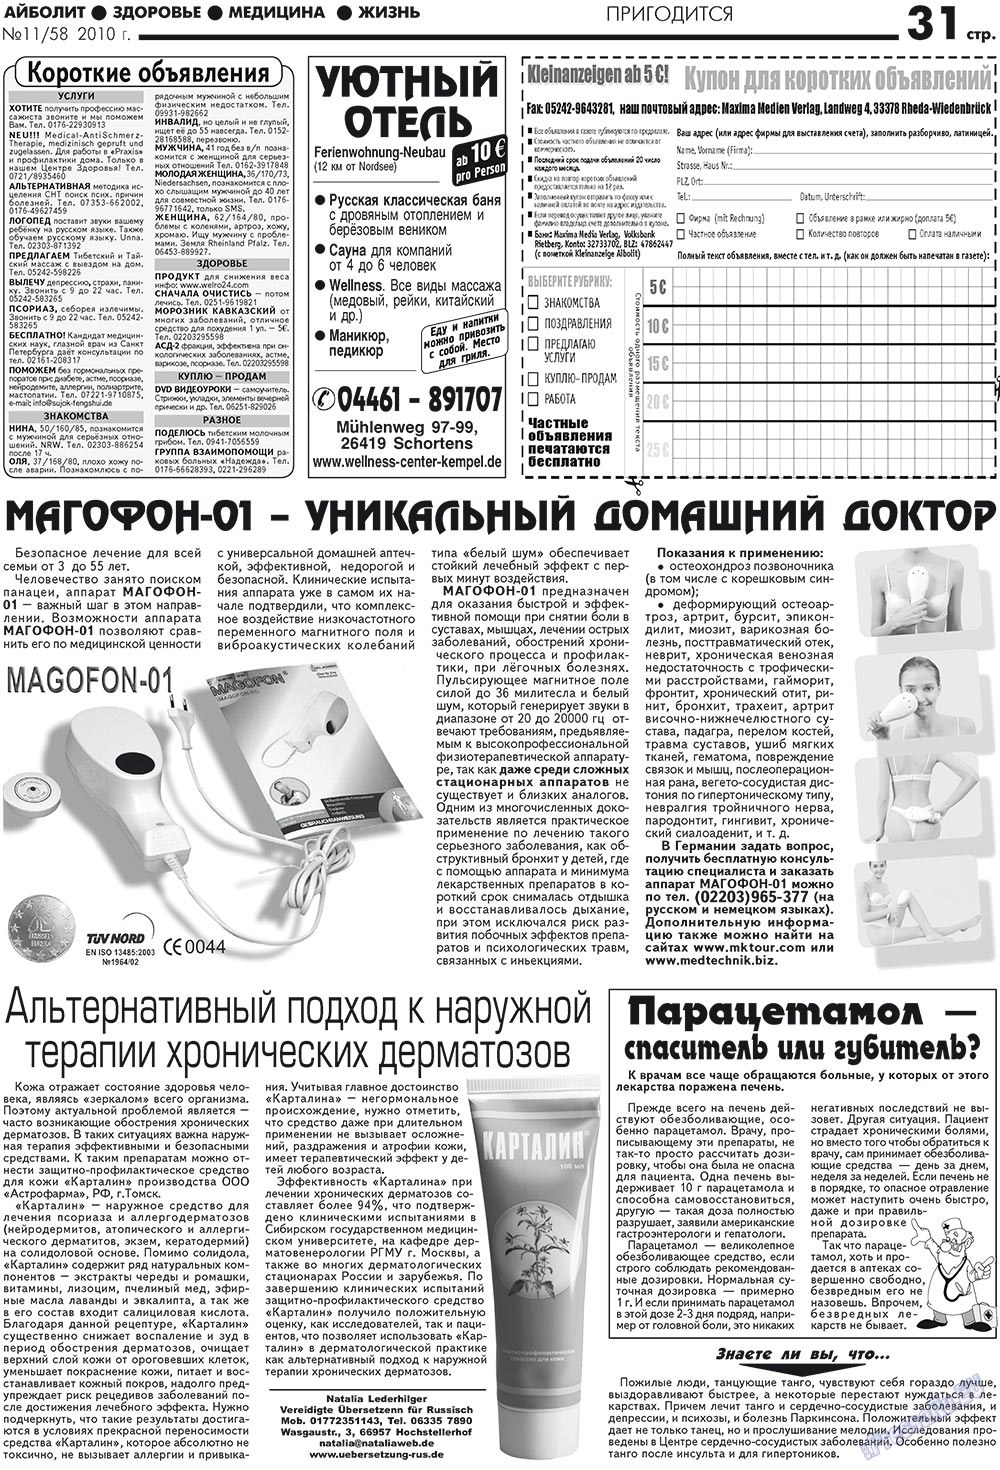 АйБолит, газета. 2010 №11 стр.31